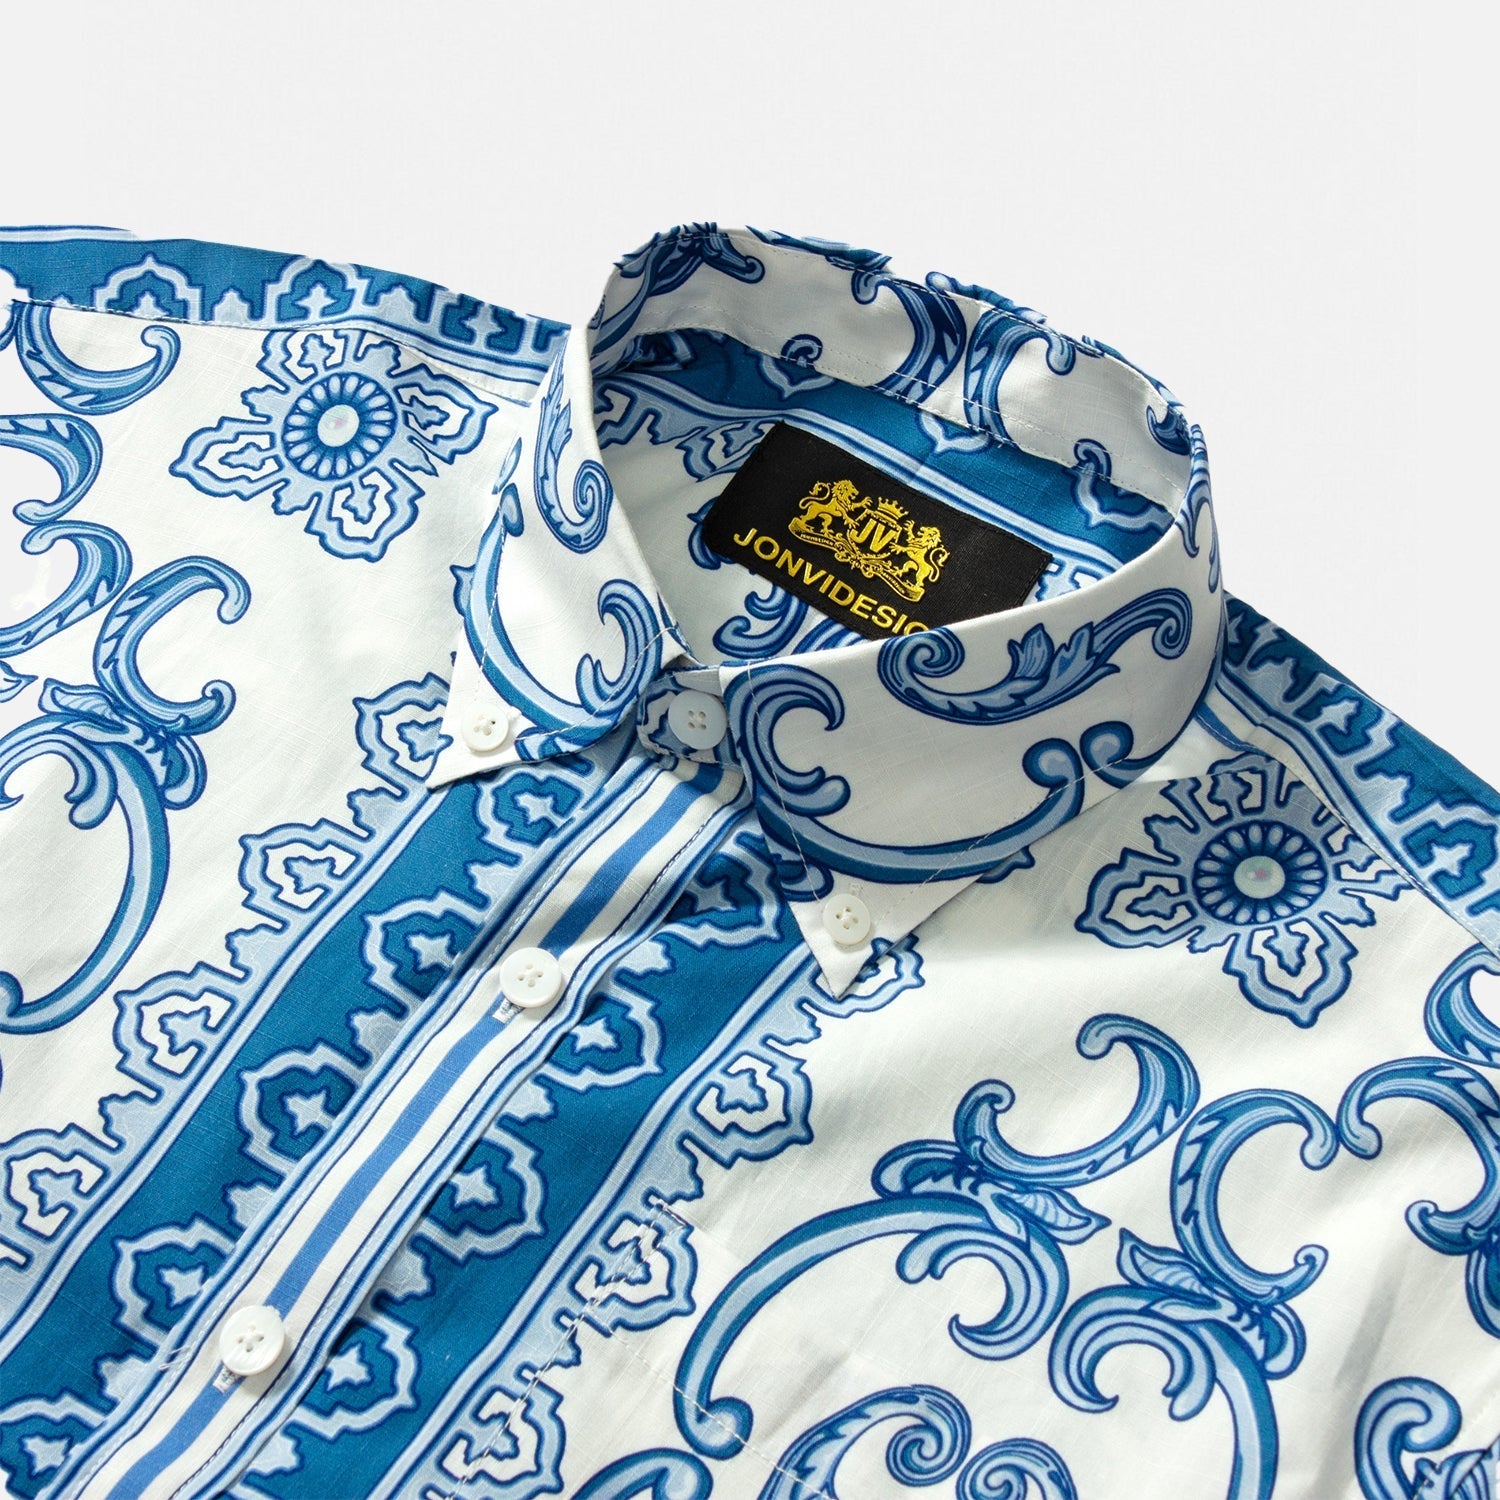 Paisley Design Short Sleeve Shirt for Men in Blue Jonvidesign